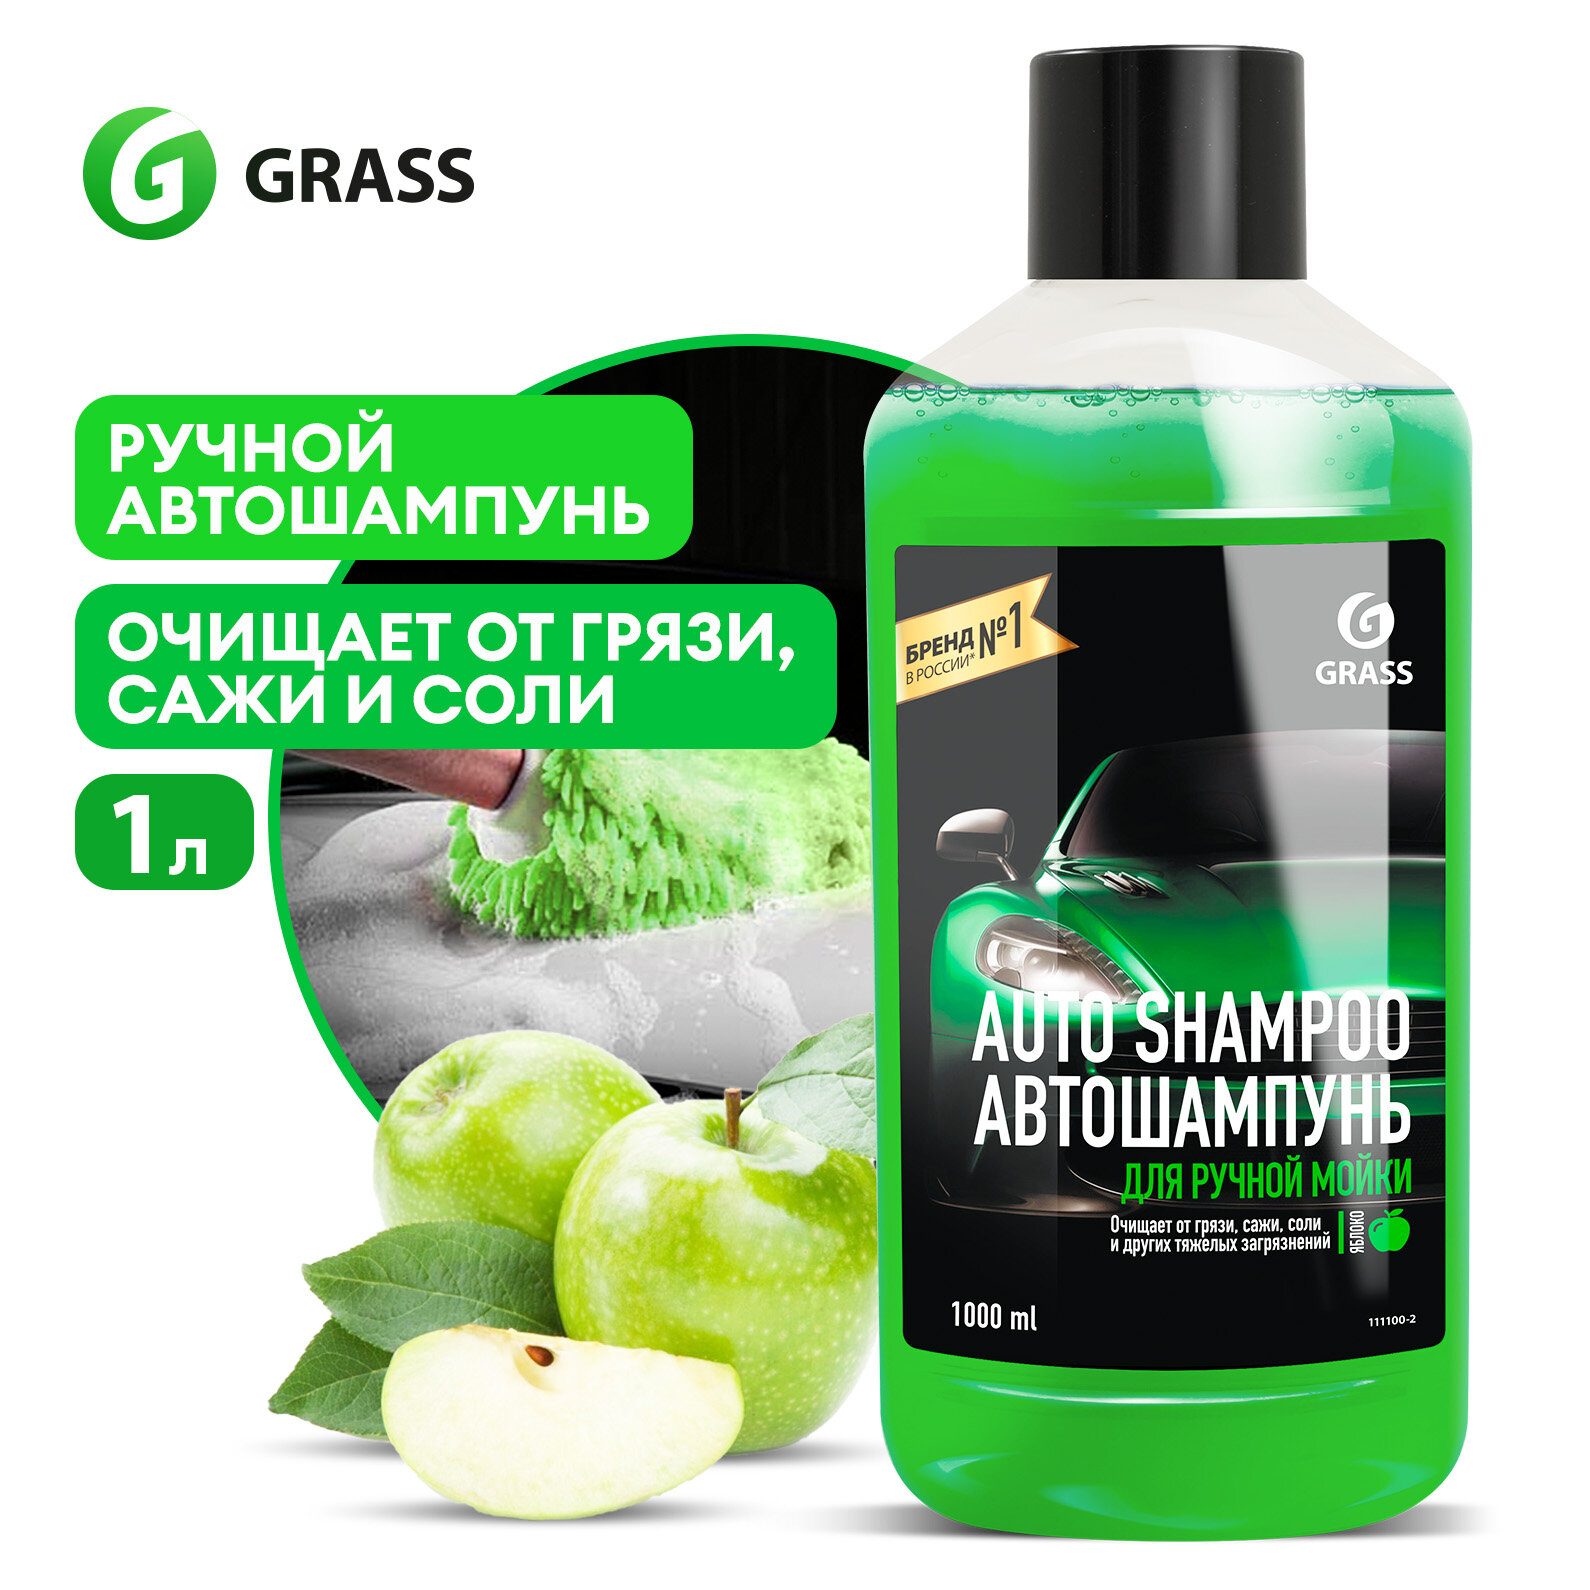 Набор автошампуней Grass"Auto Shampoo" и Wash & Wax набор 2 шт по 1л